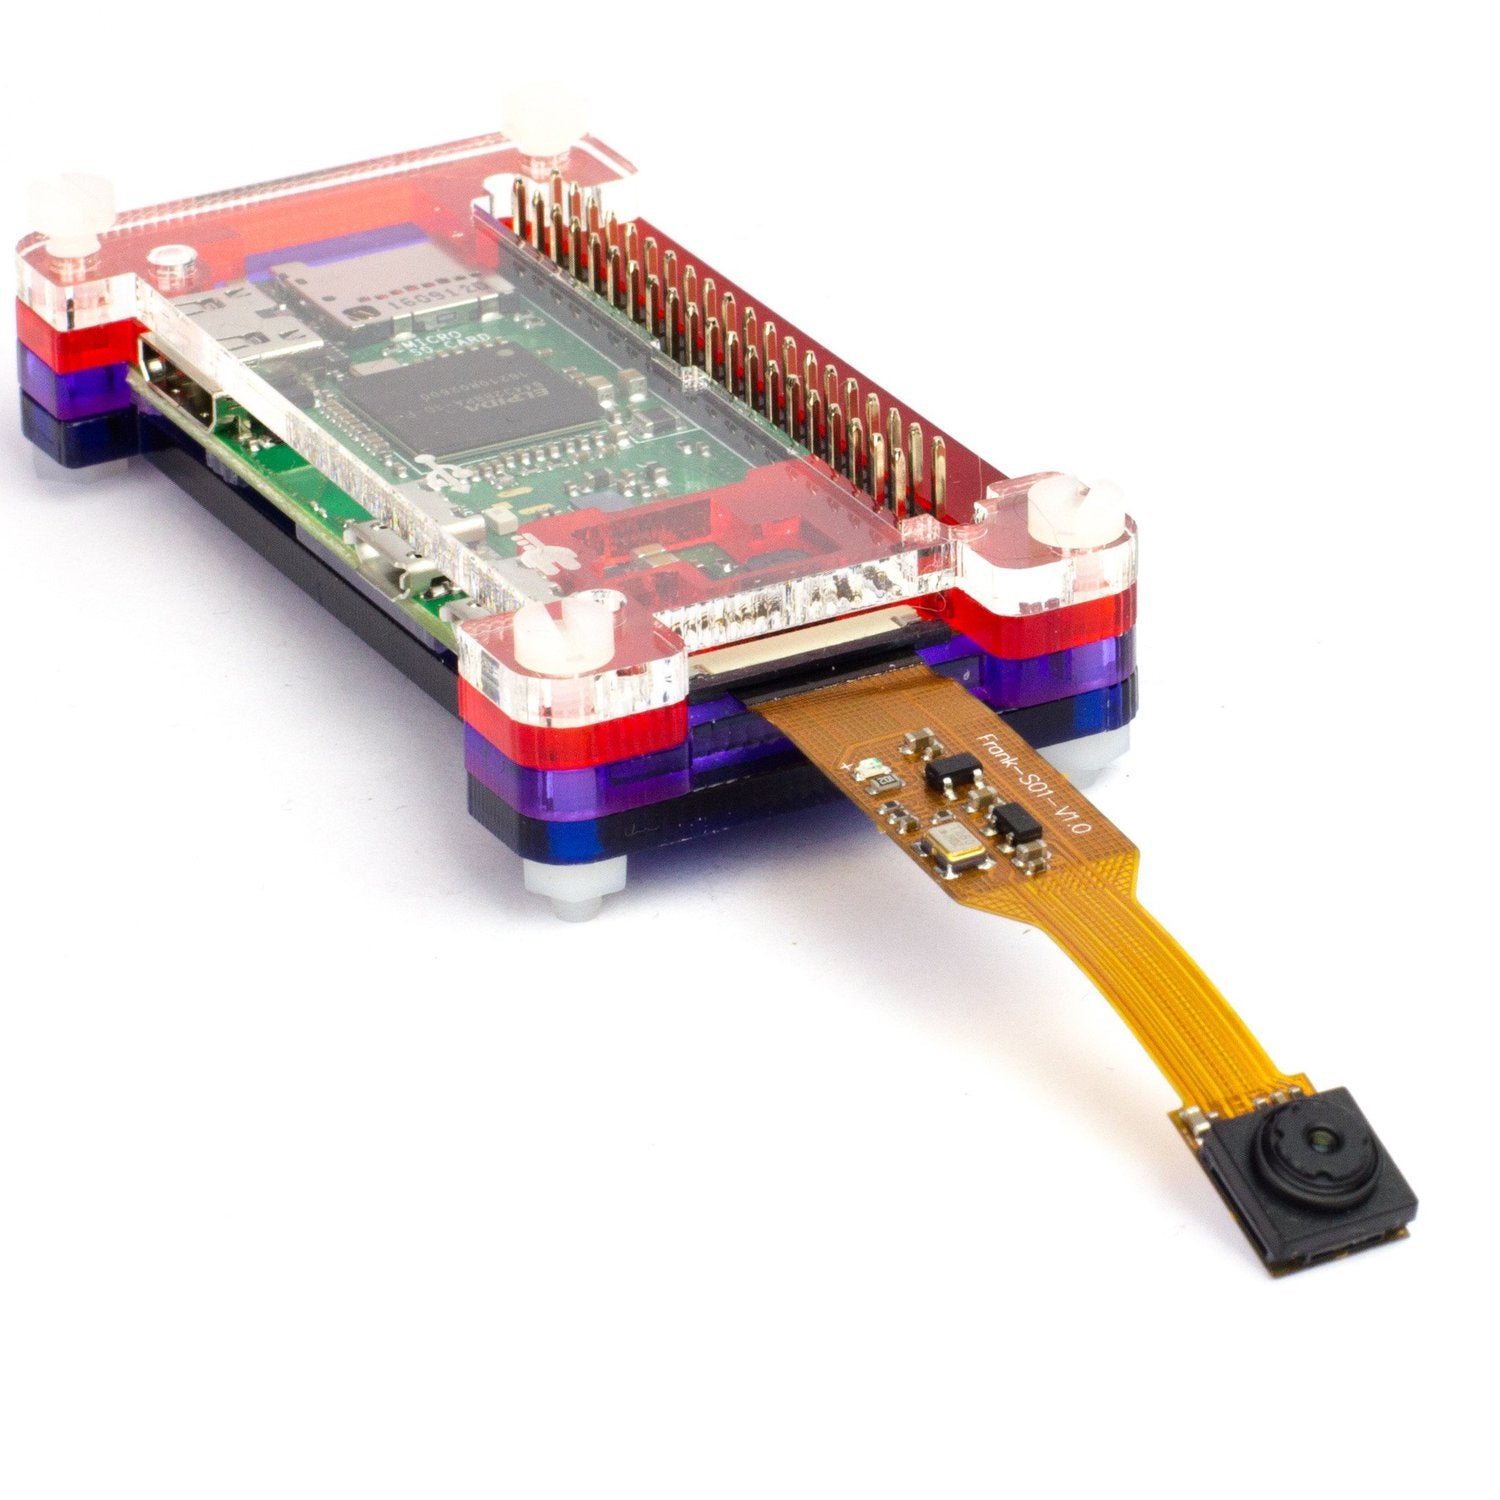 Camera Module for Raspberry Pi Zero - Wide Angle